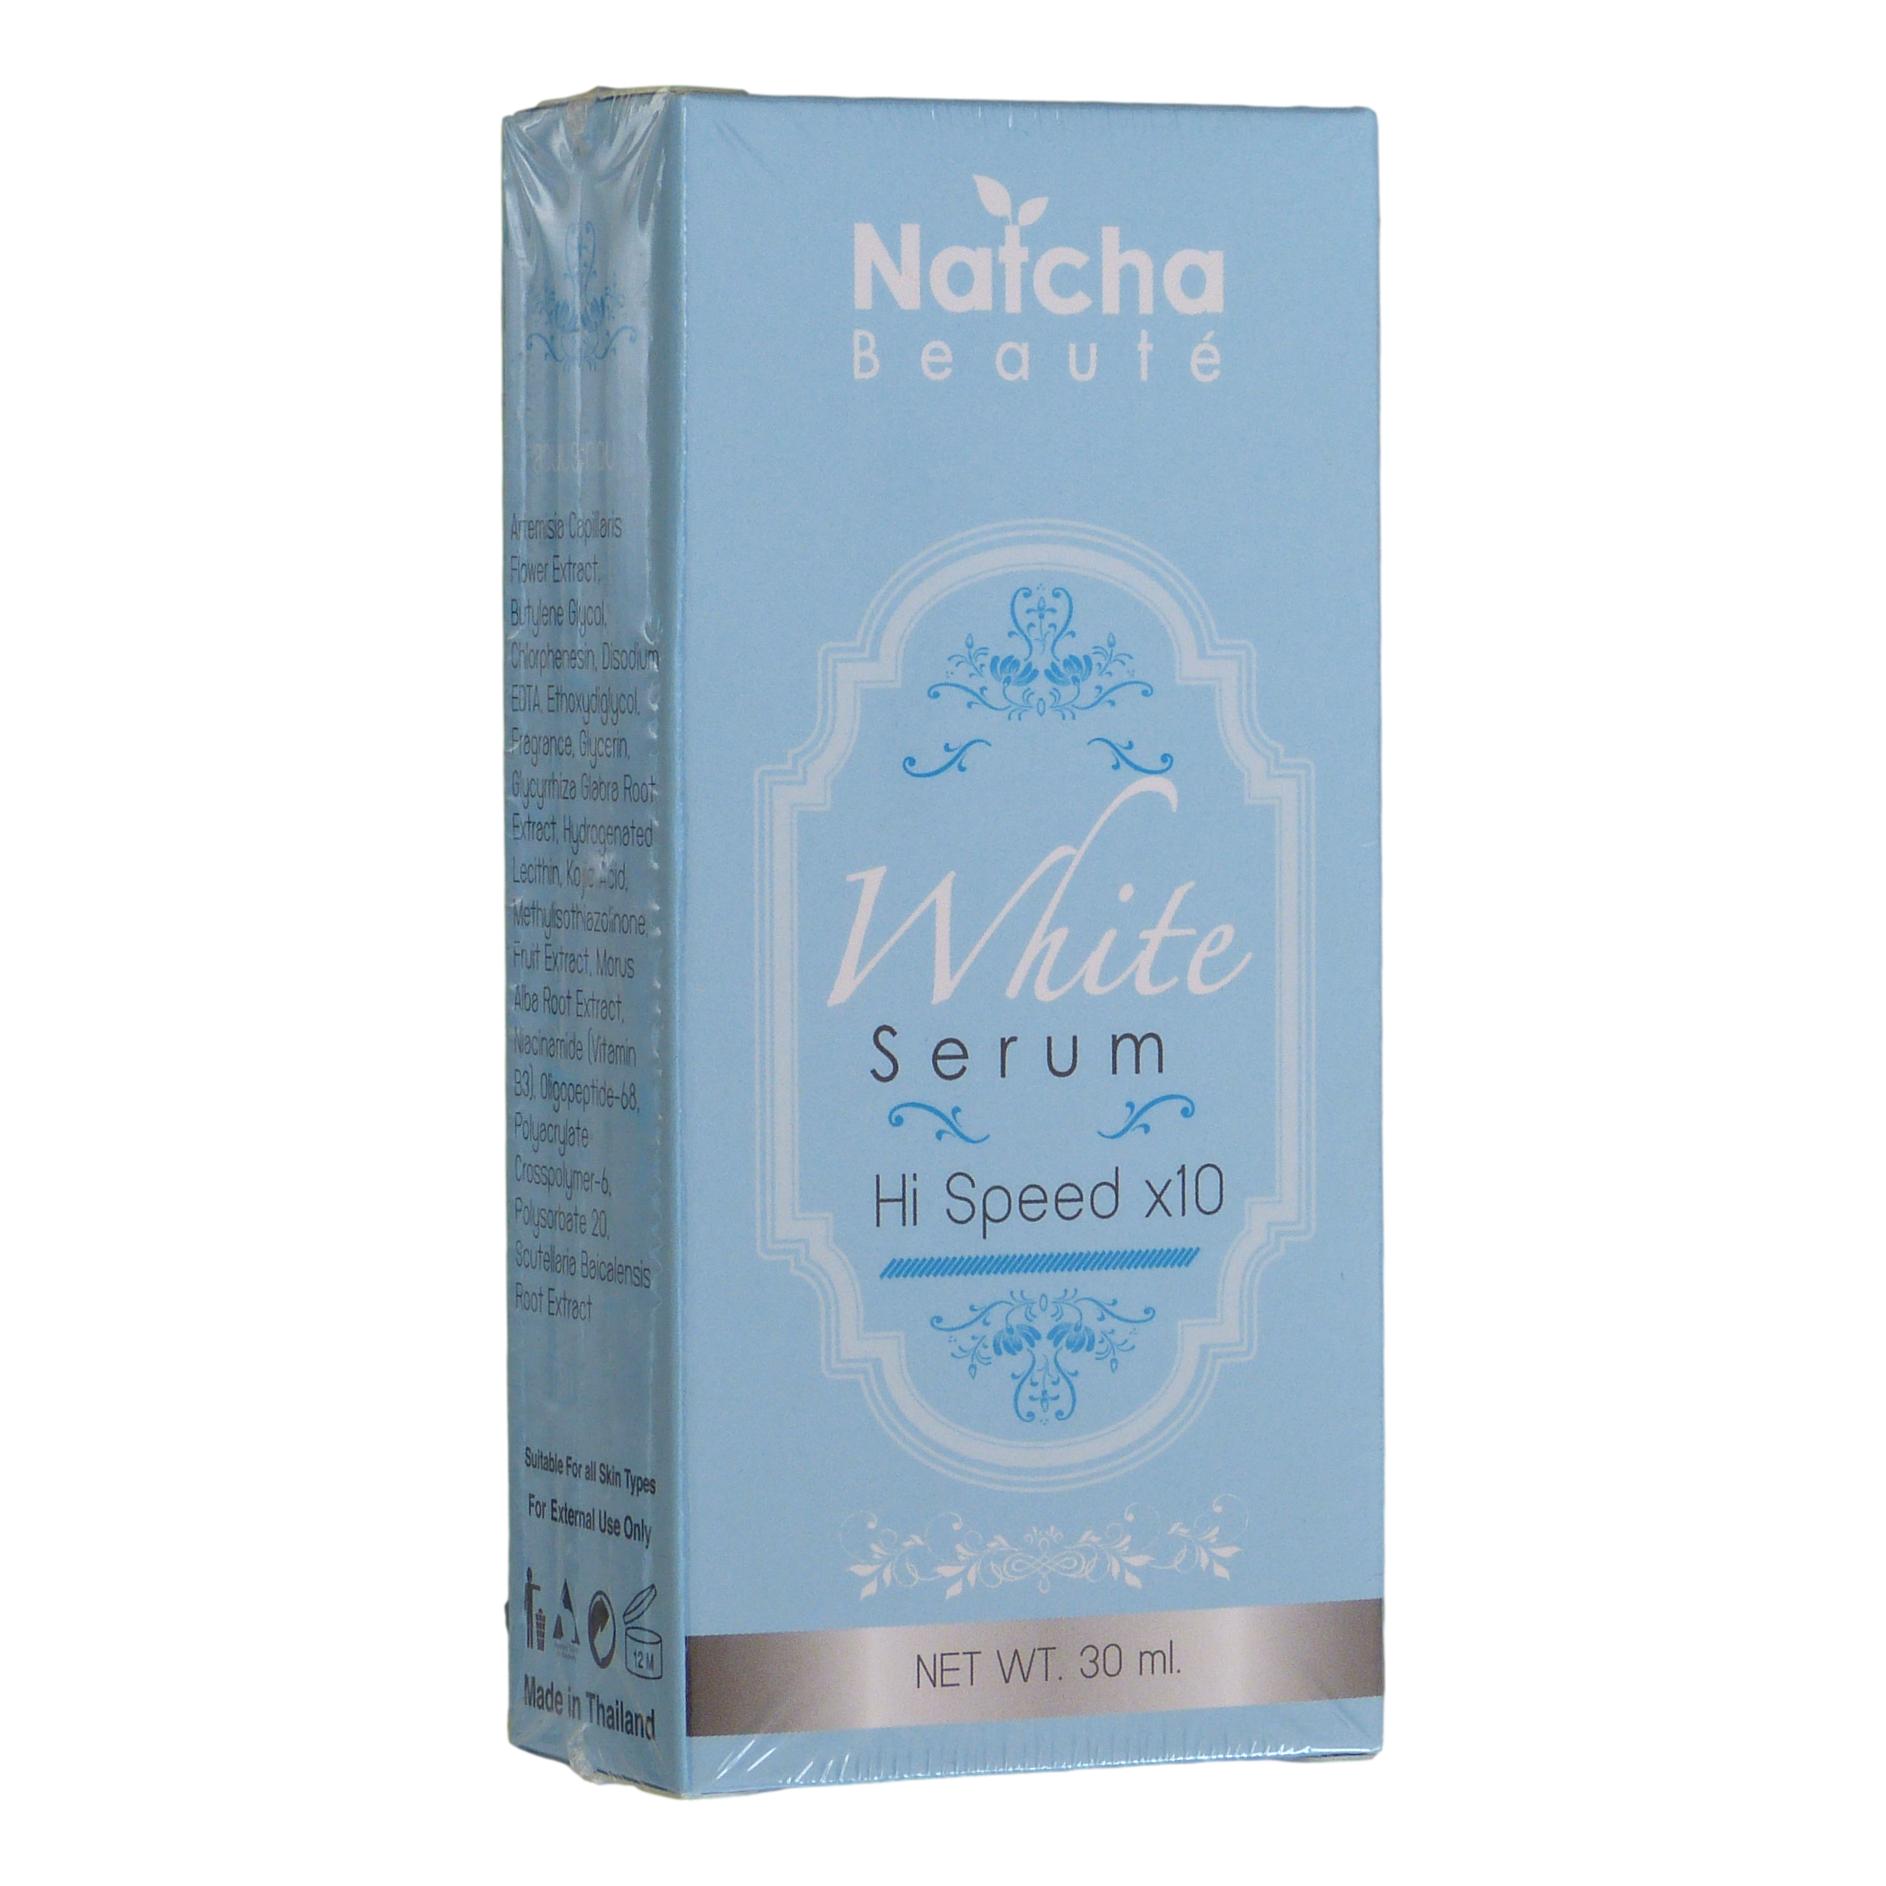 Natcha Beaute White Serum 30ml - Asian Beauty Supply